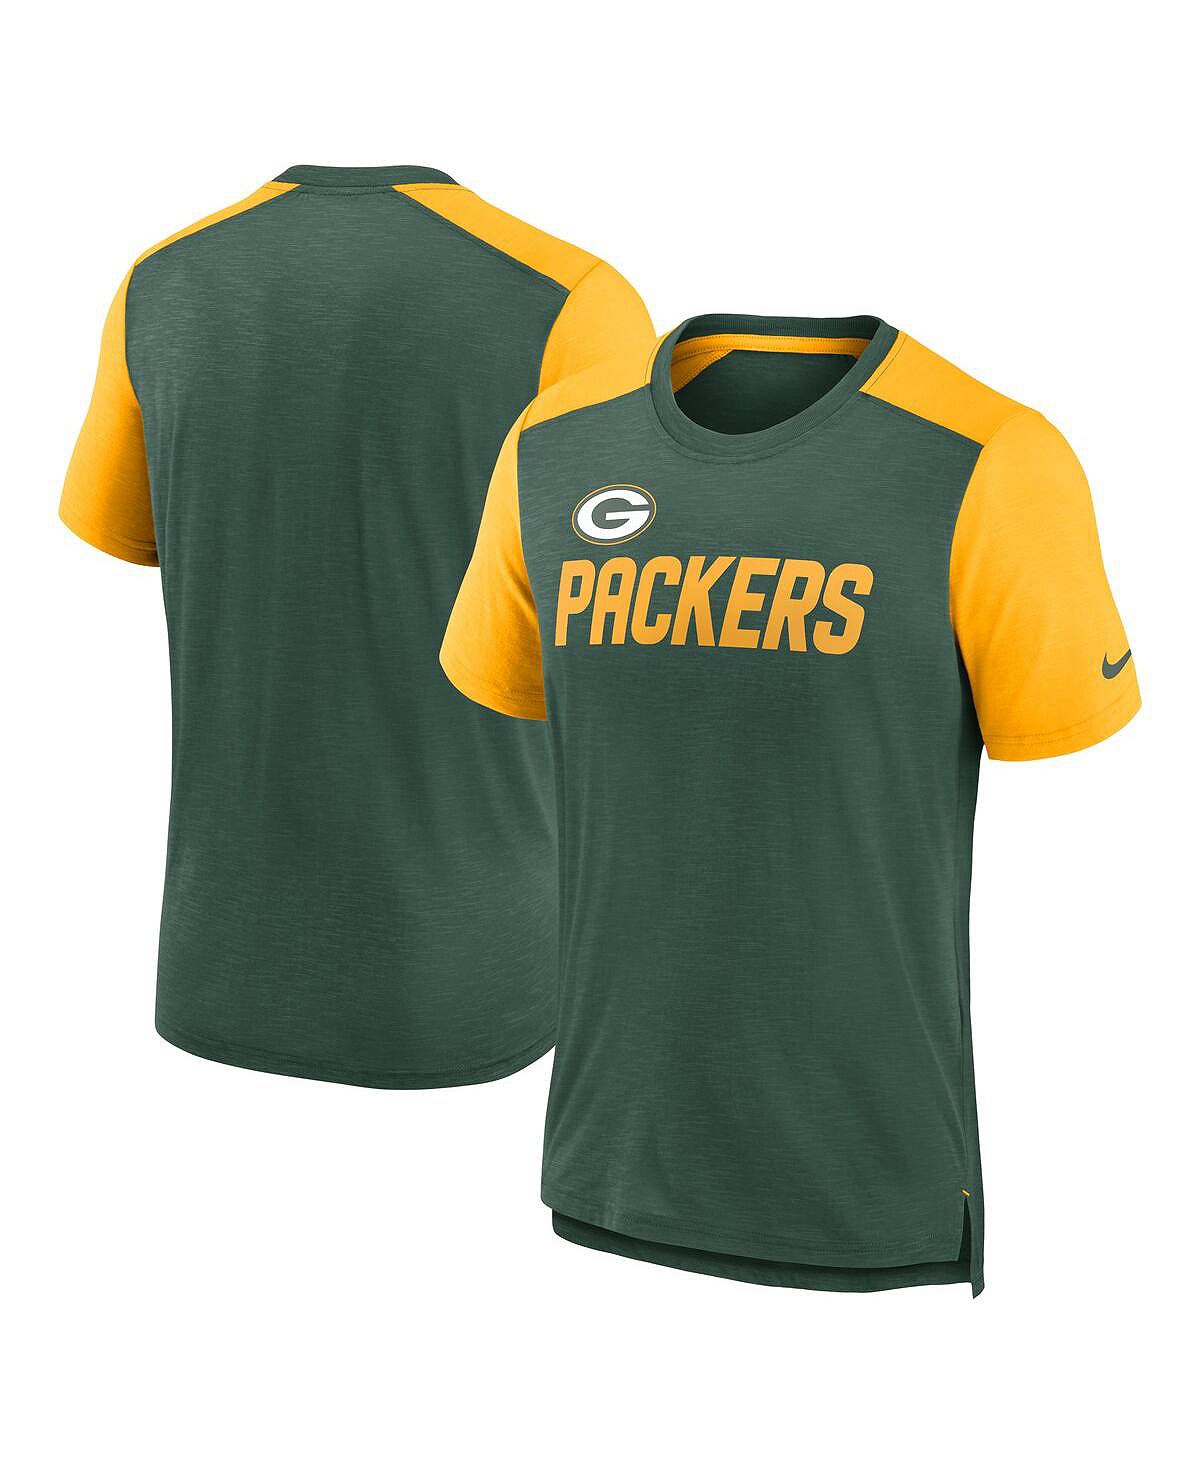 мужская футболка green bay packers horizontal lockup legend золотистого цвета nike Мужская футболка с названием команды Green Bay Packers в стиле колор-блок, зеленая, золотистая с меланжевым отливом Nike